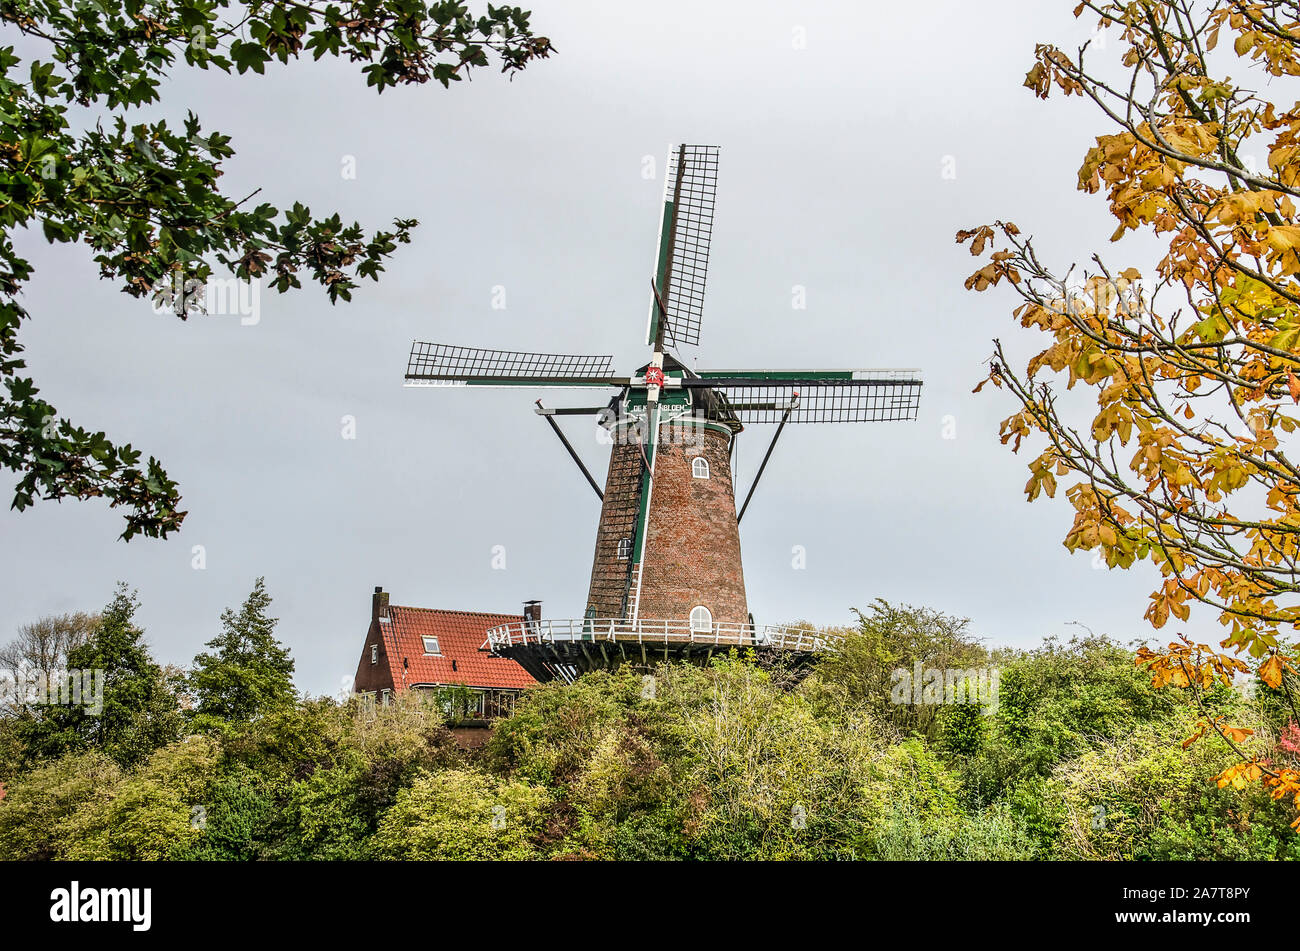 Va, les Pays-Bas, le 9 octobre 2019 : Moulin De Koornbloem (le bleuet) entouré d'arbres en couleurs d'automne Banque D'Images